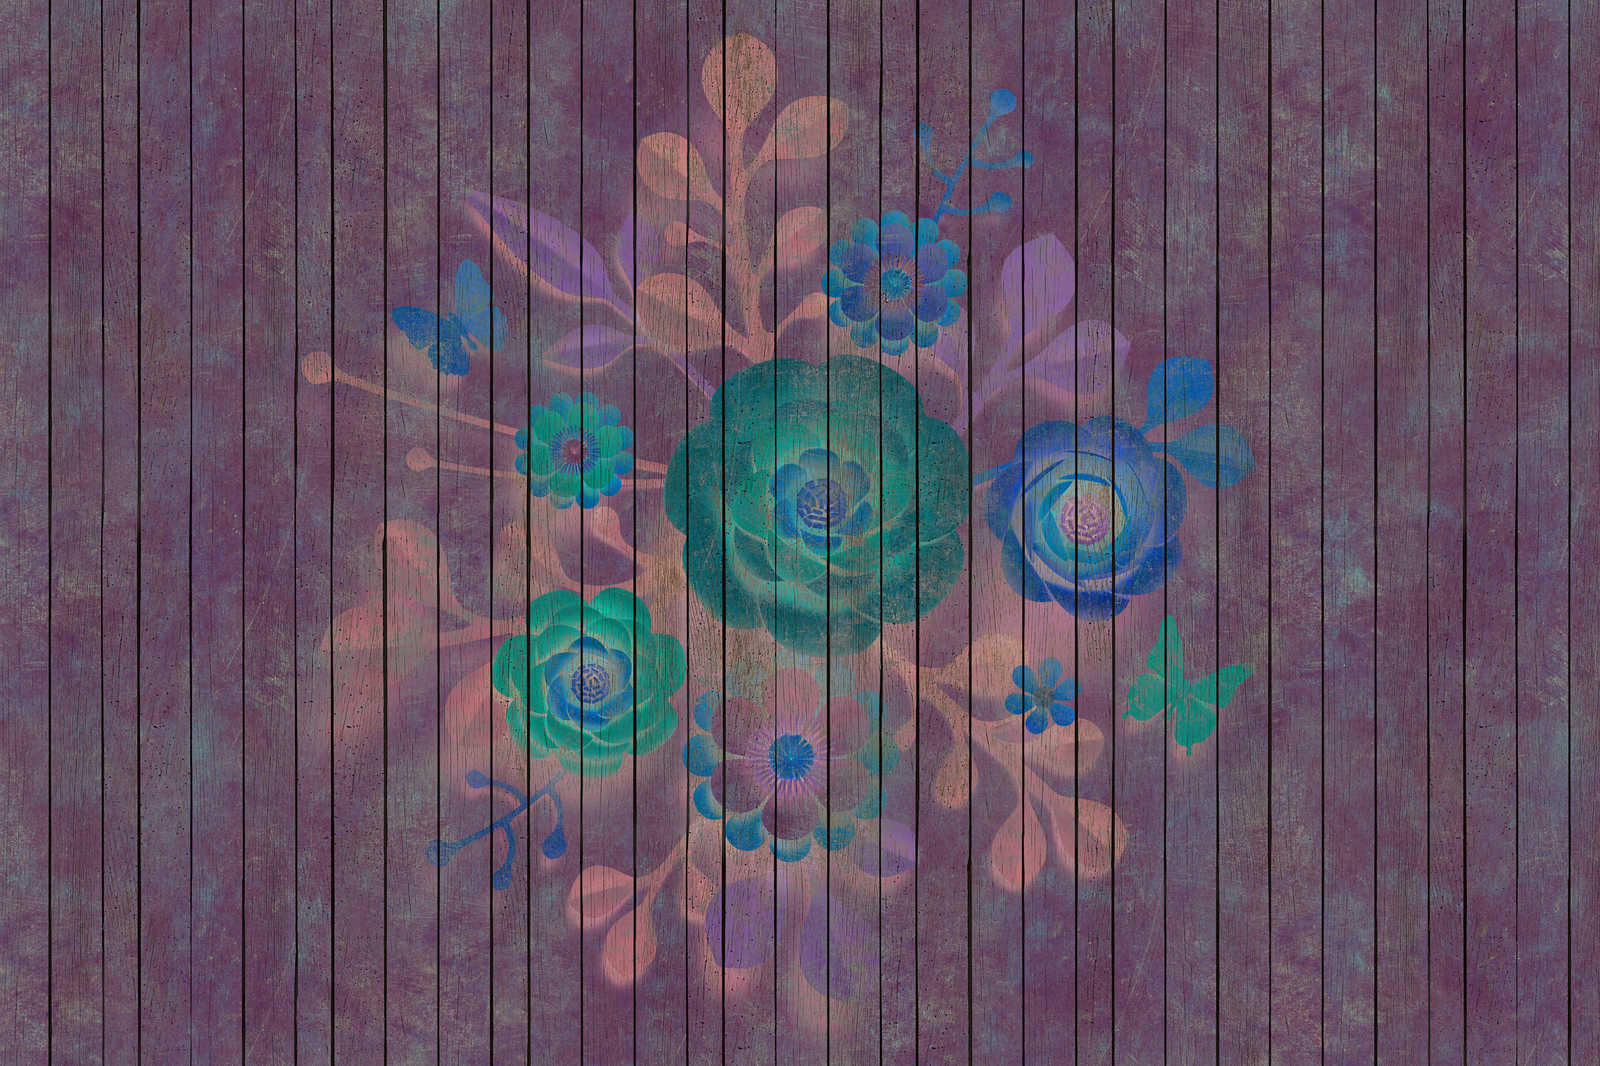             Spray bouquet 1 - toile avec fleurs sur panneau - panneaux de bois large - 0,90 m x 0,60 m
        